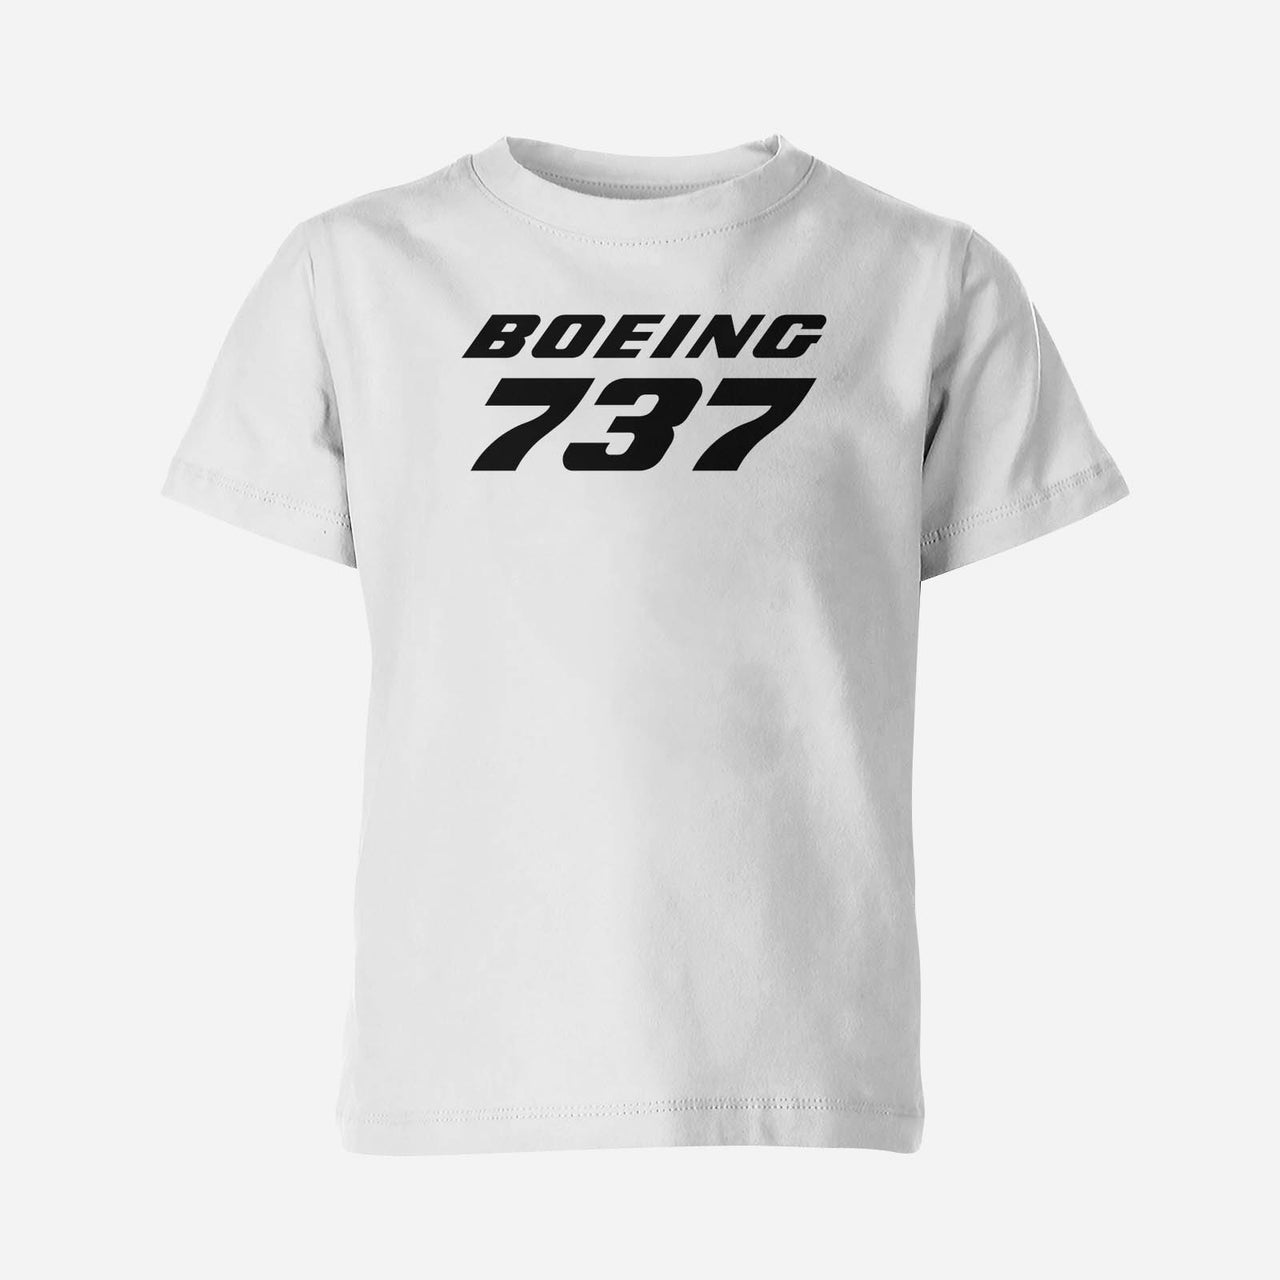 Boeing 737 & Text Designed Children T-Shirts